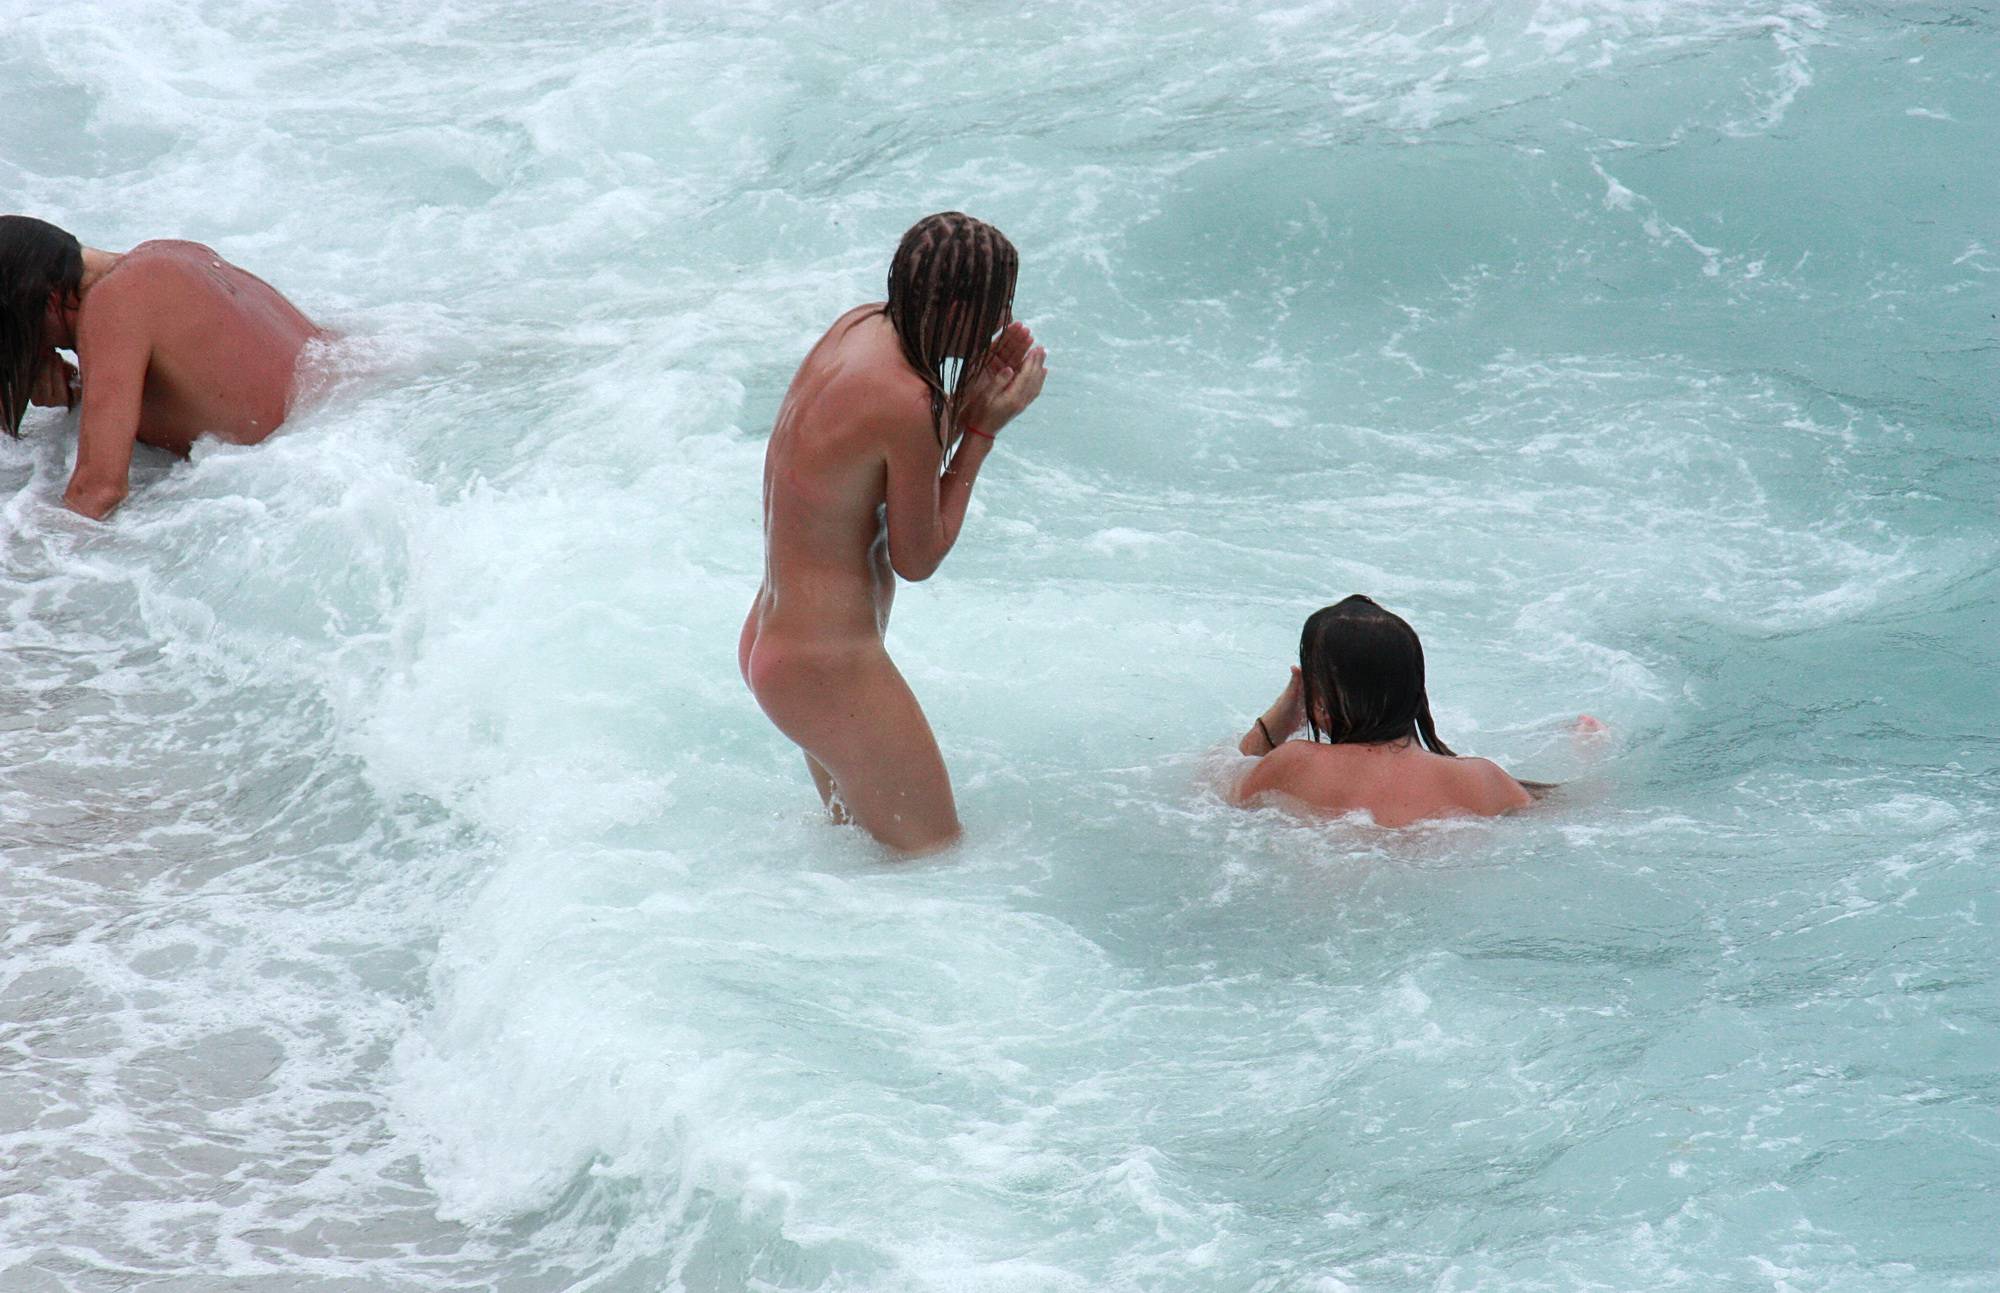 Nudist Pics Swimming Fierce Waves - 2